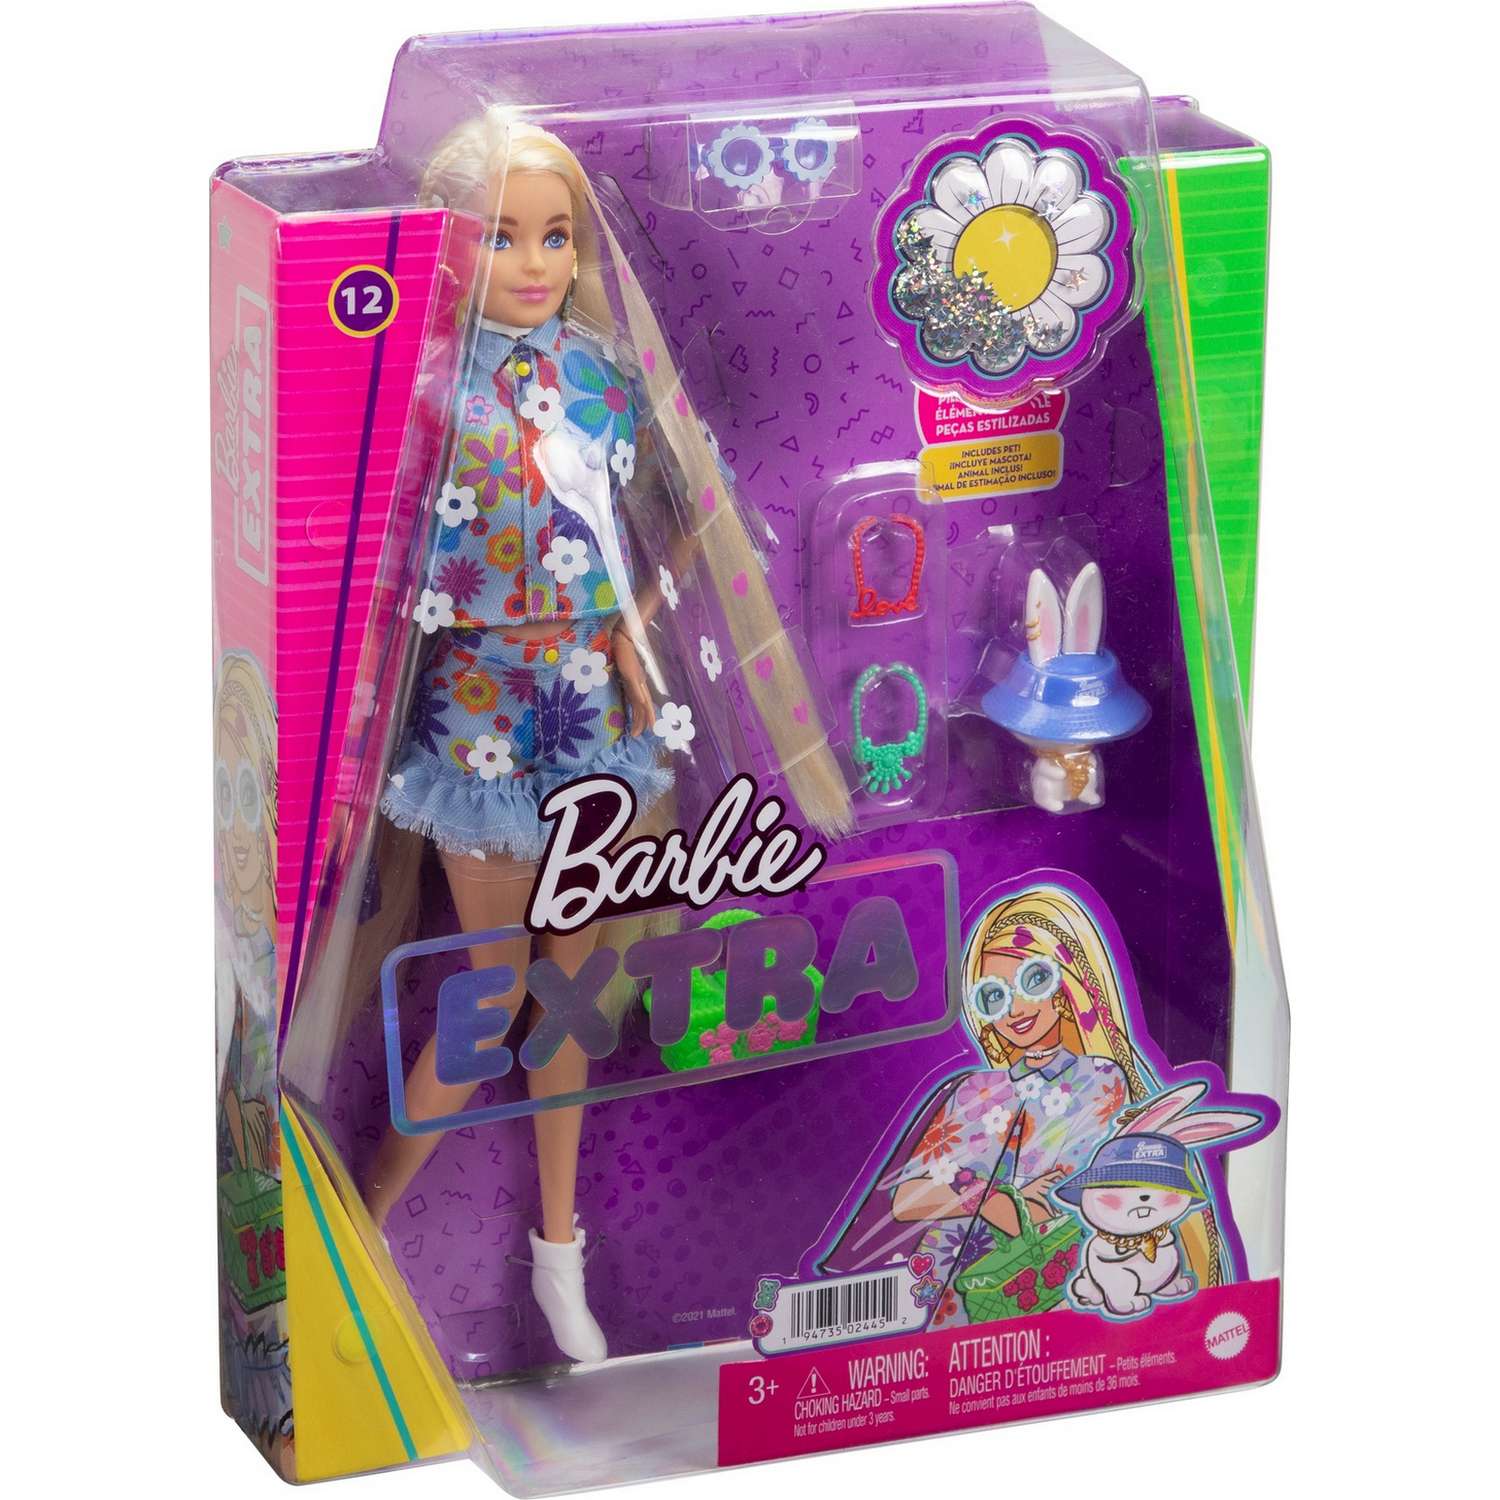 Кукла Barbie Экстра в одежде с цветочным принтом HDJ45 HDJ45 - фото 3